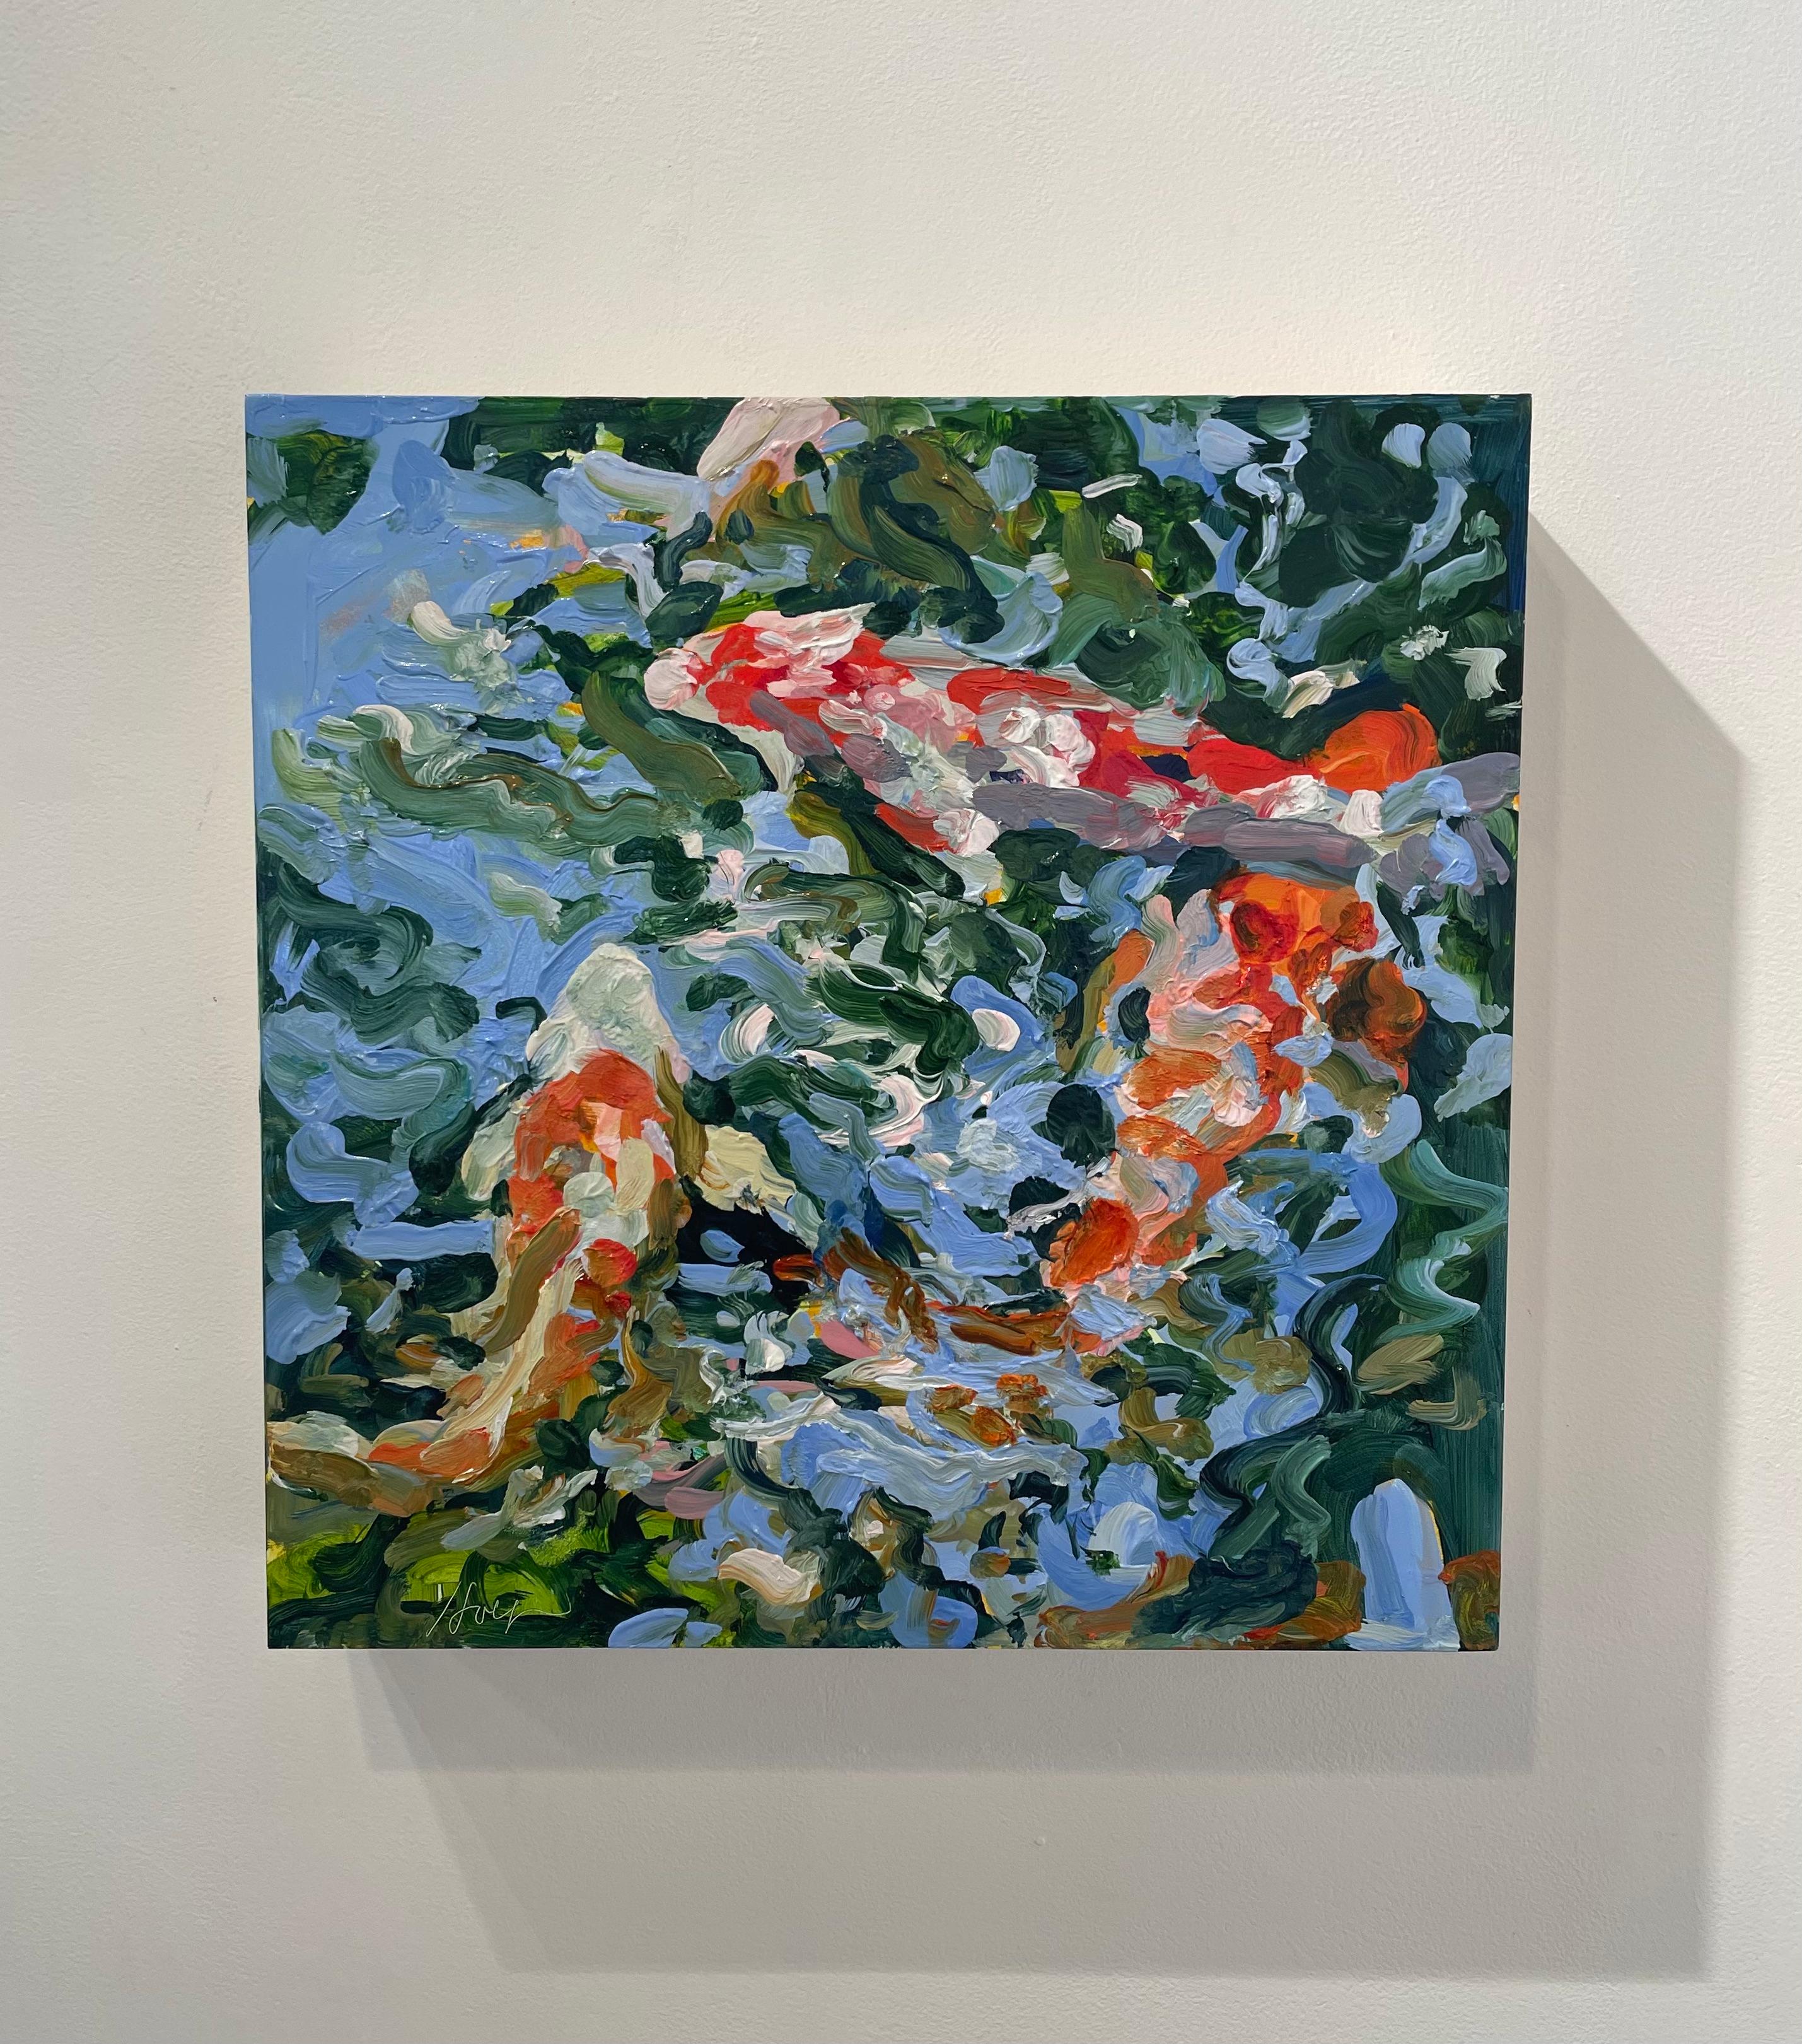 paintings of fish underwater